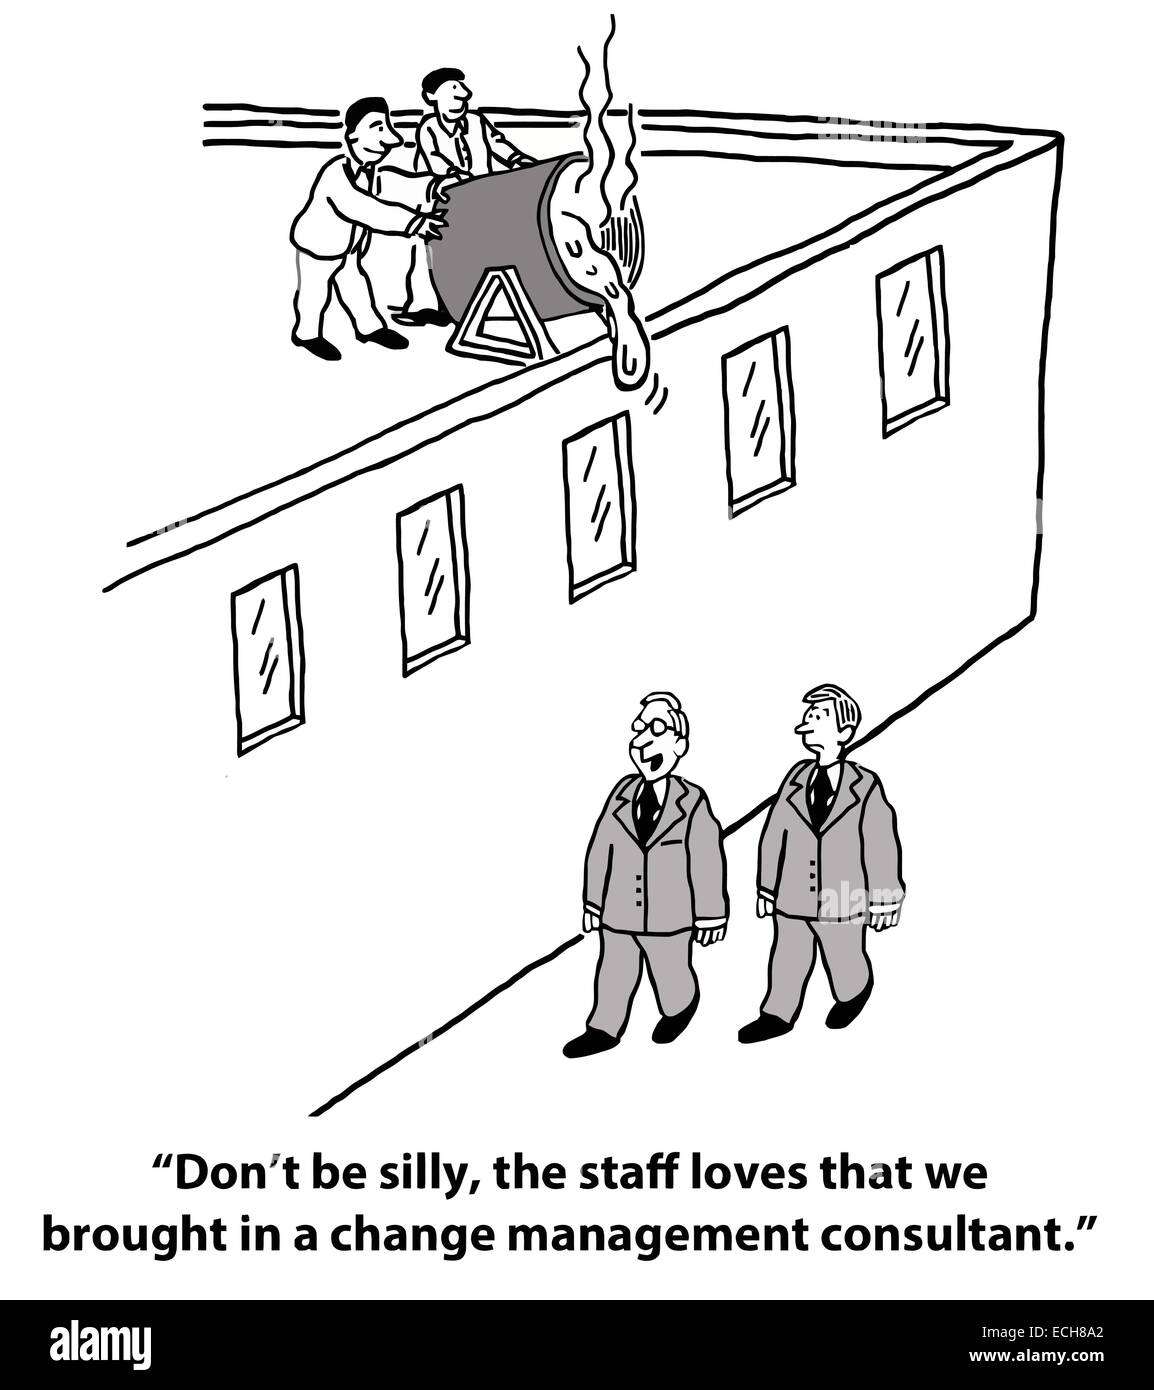 Il boss è eccitato e felice che la società ha portato a un cambiamento consulente di management, ma non il personale. Illustrazione Vettoriale